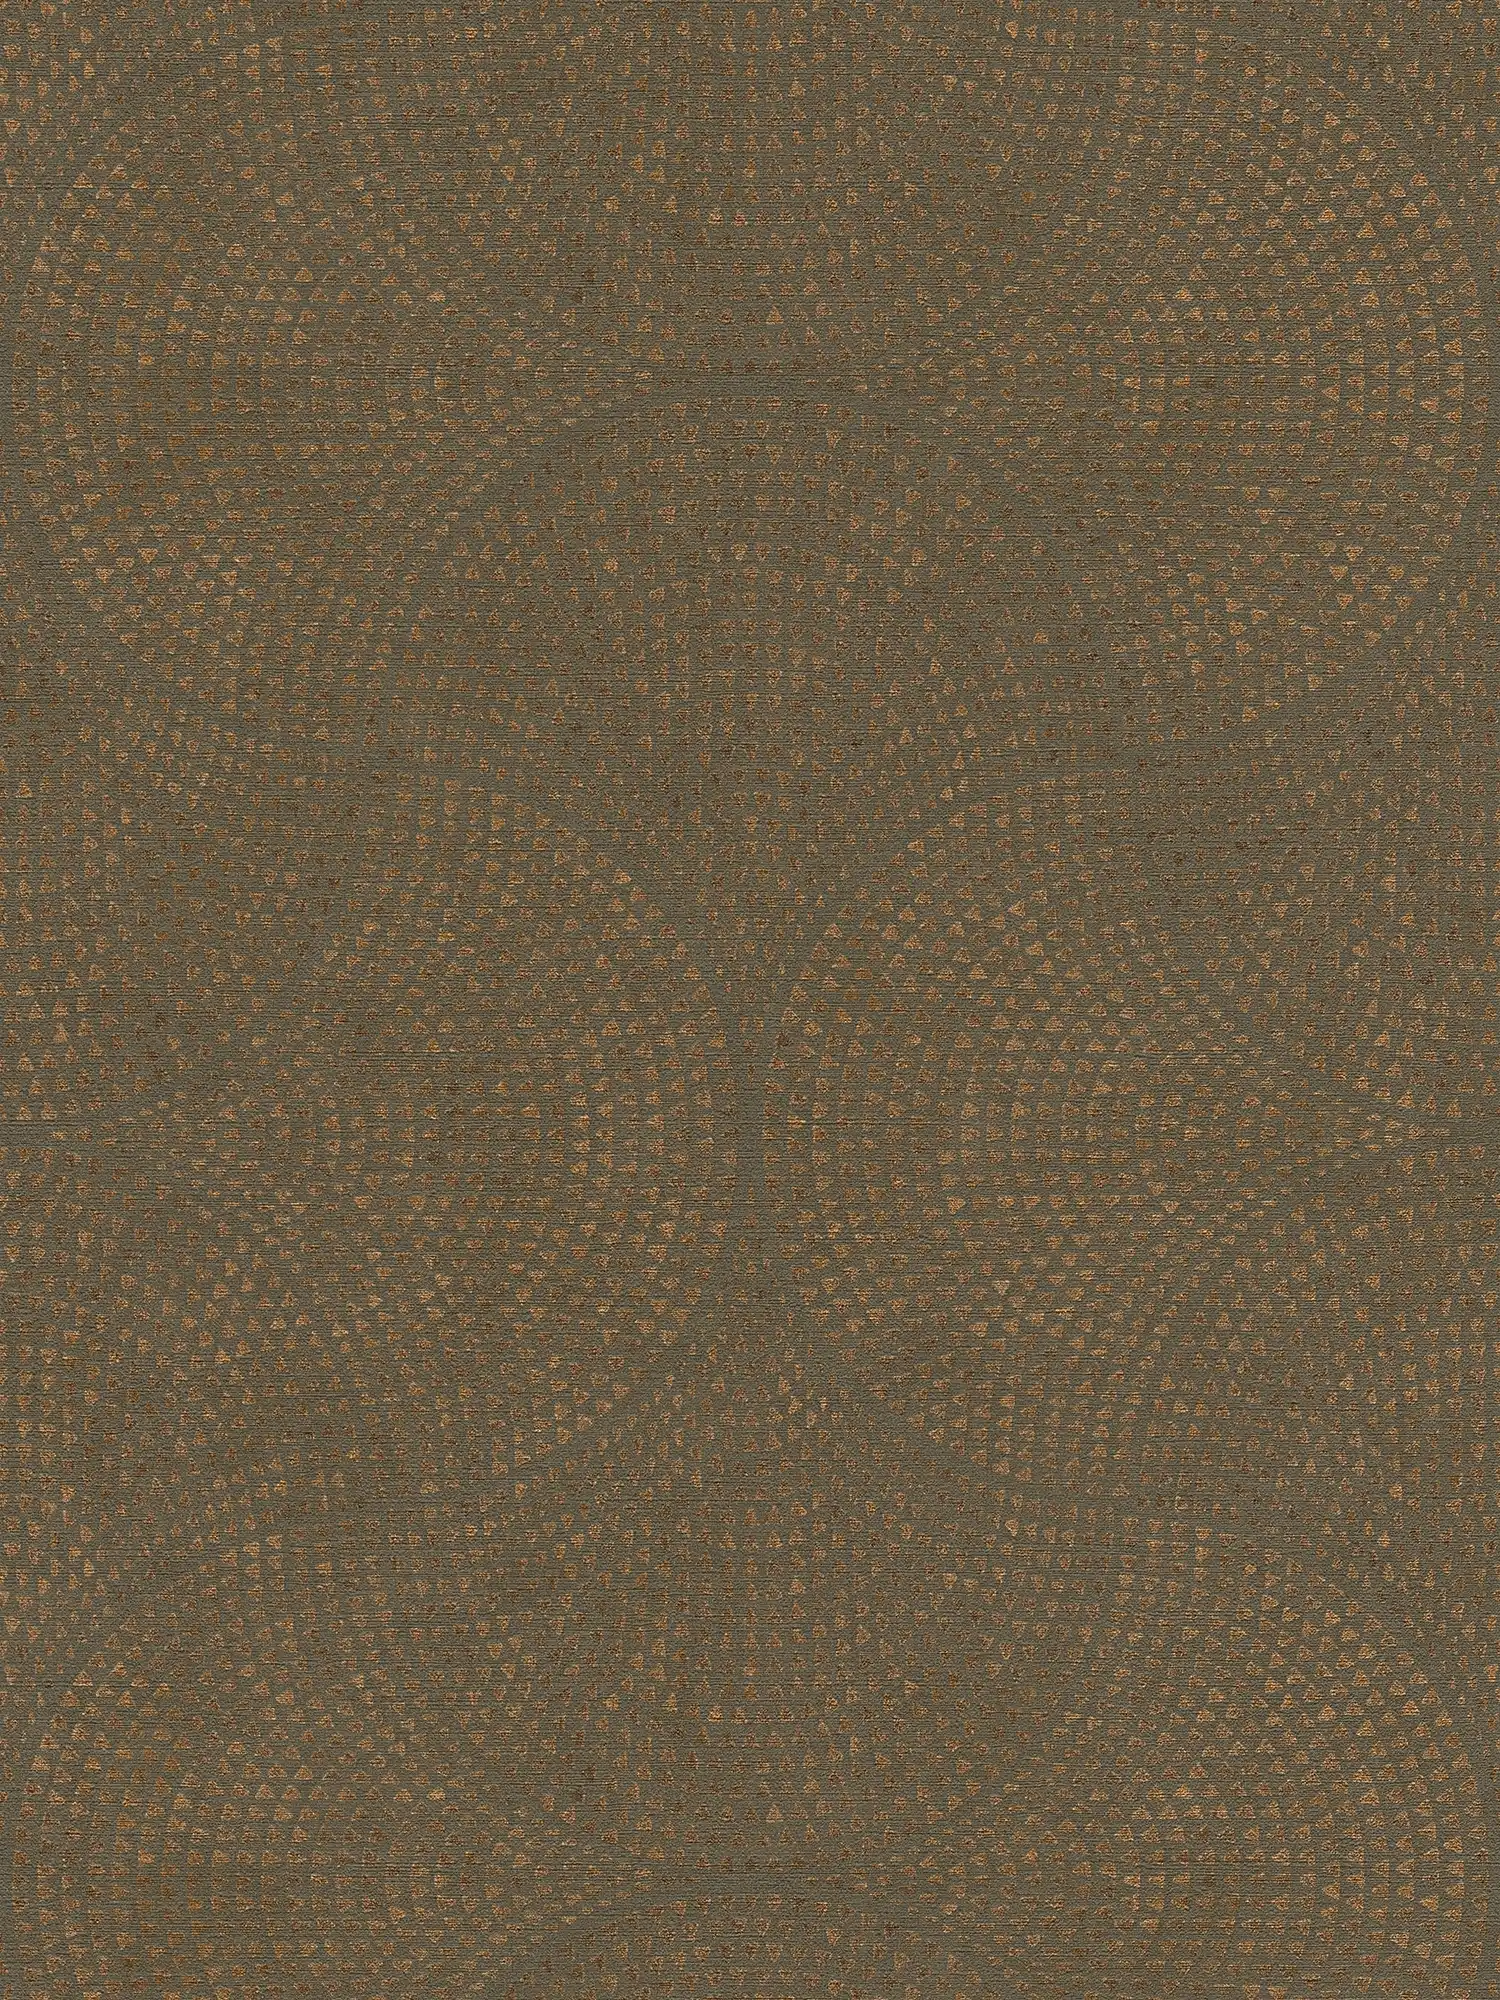 Carta da parati marrone con motivo rame in stile mosaico - marrone, metallizzata
